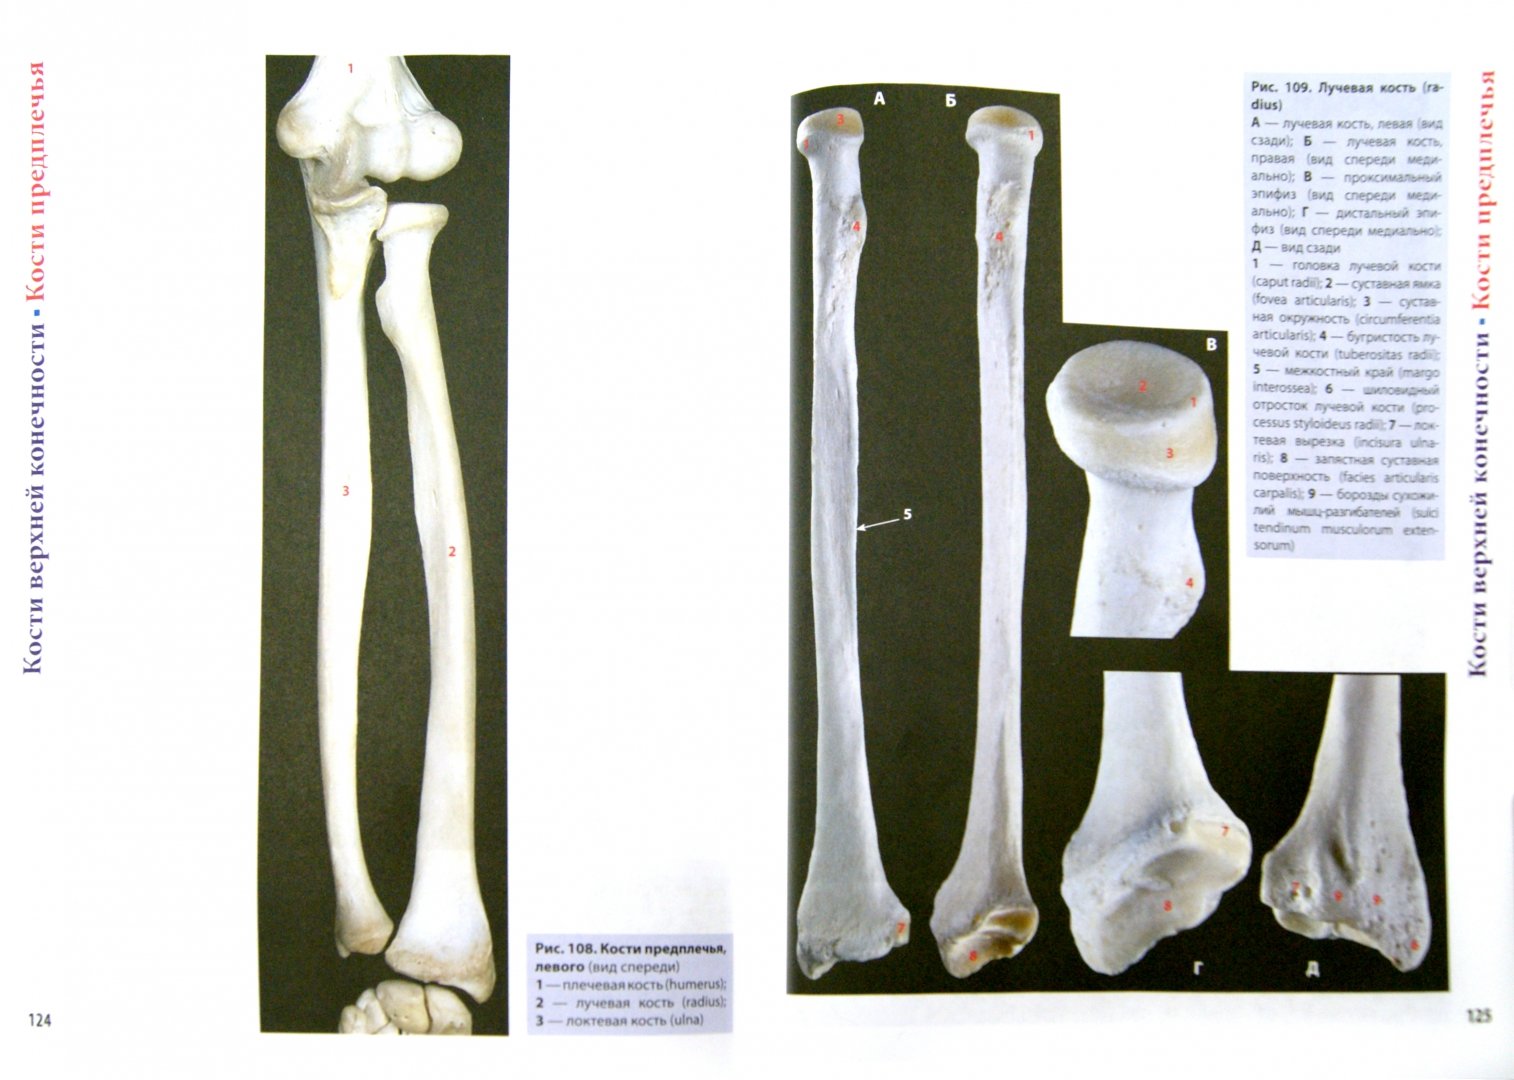 Иллюстрация 1 из 8 для Фотографический атлас анатомии человека. Костная система - Борзяк, Гунтер | Лабиринт - книги. Источник: Лабиринт